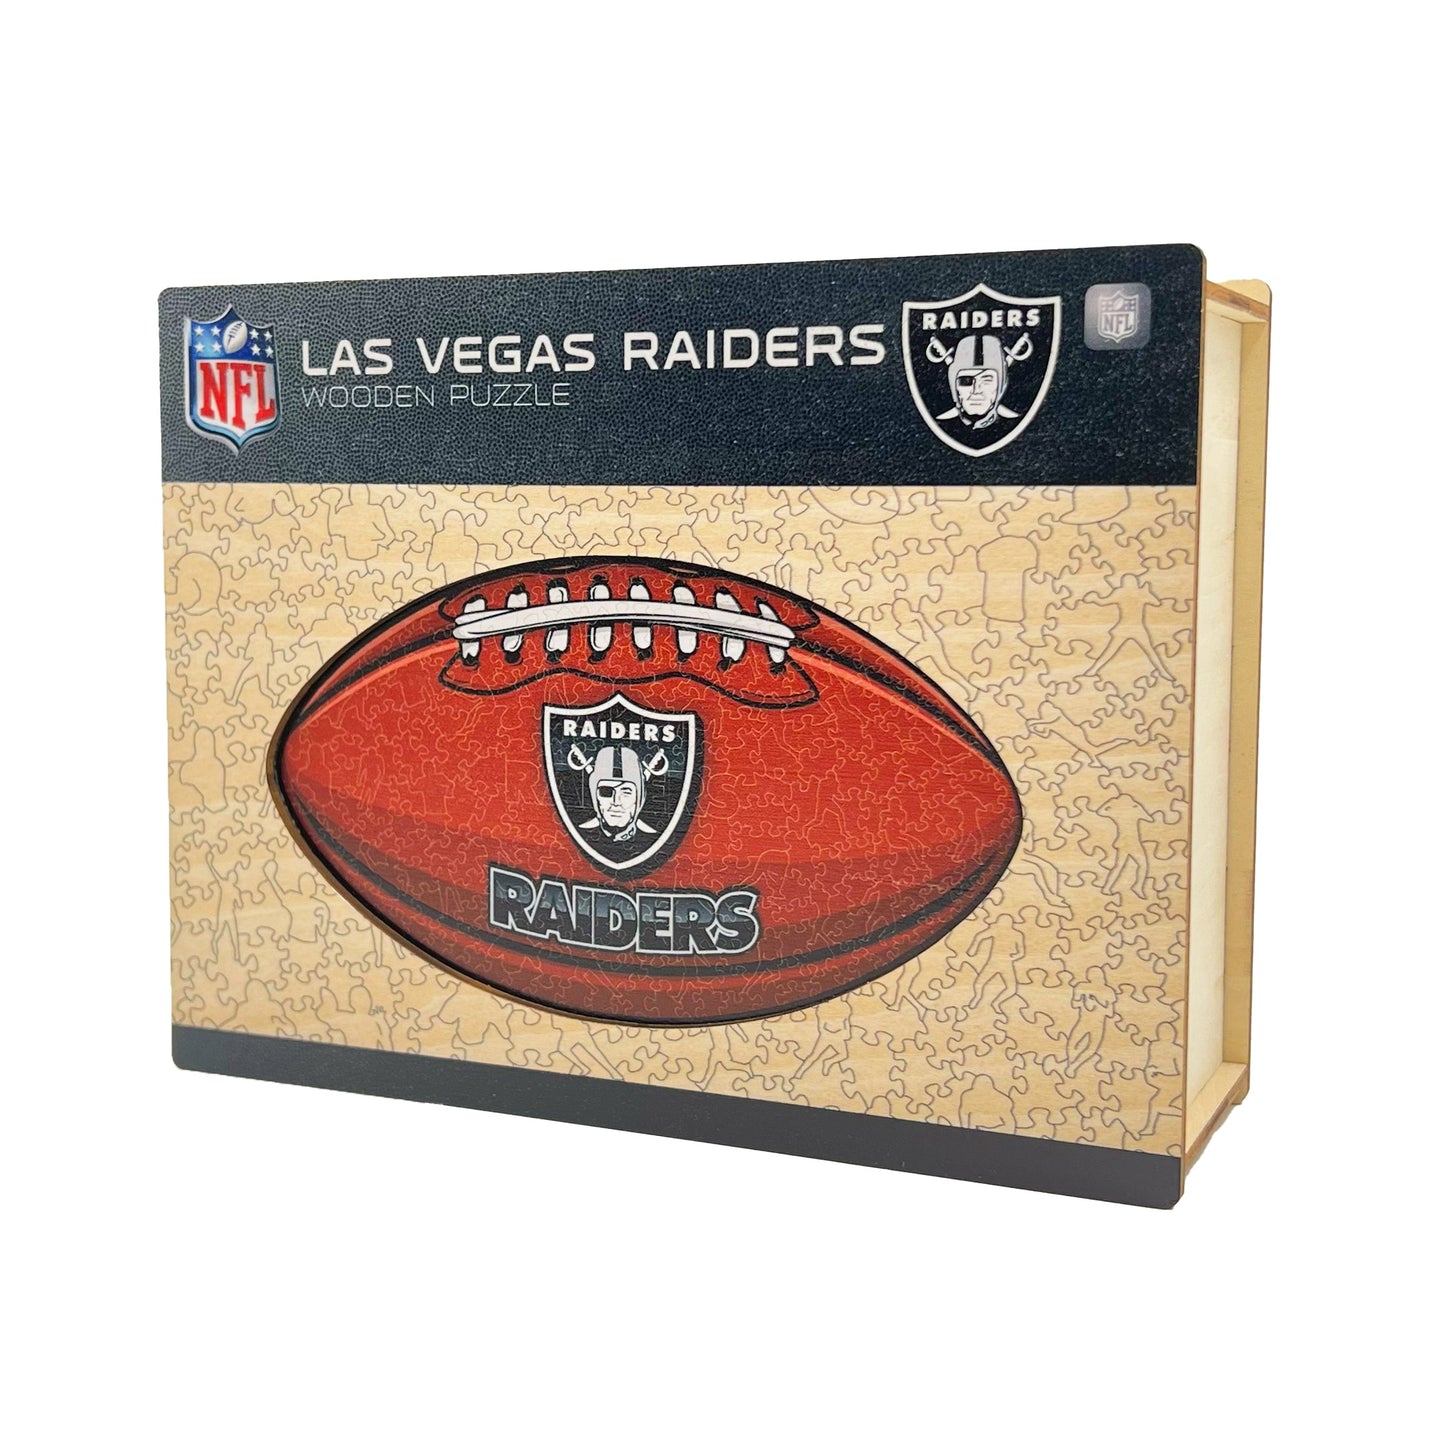 Las Vegas Raiders - Official Wooden Puzzle